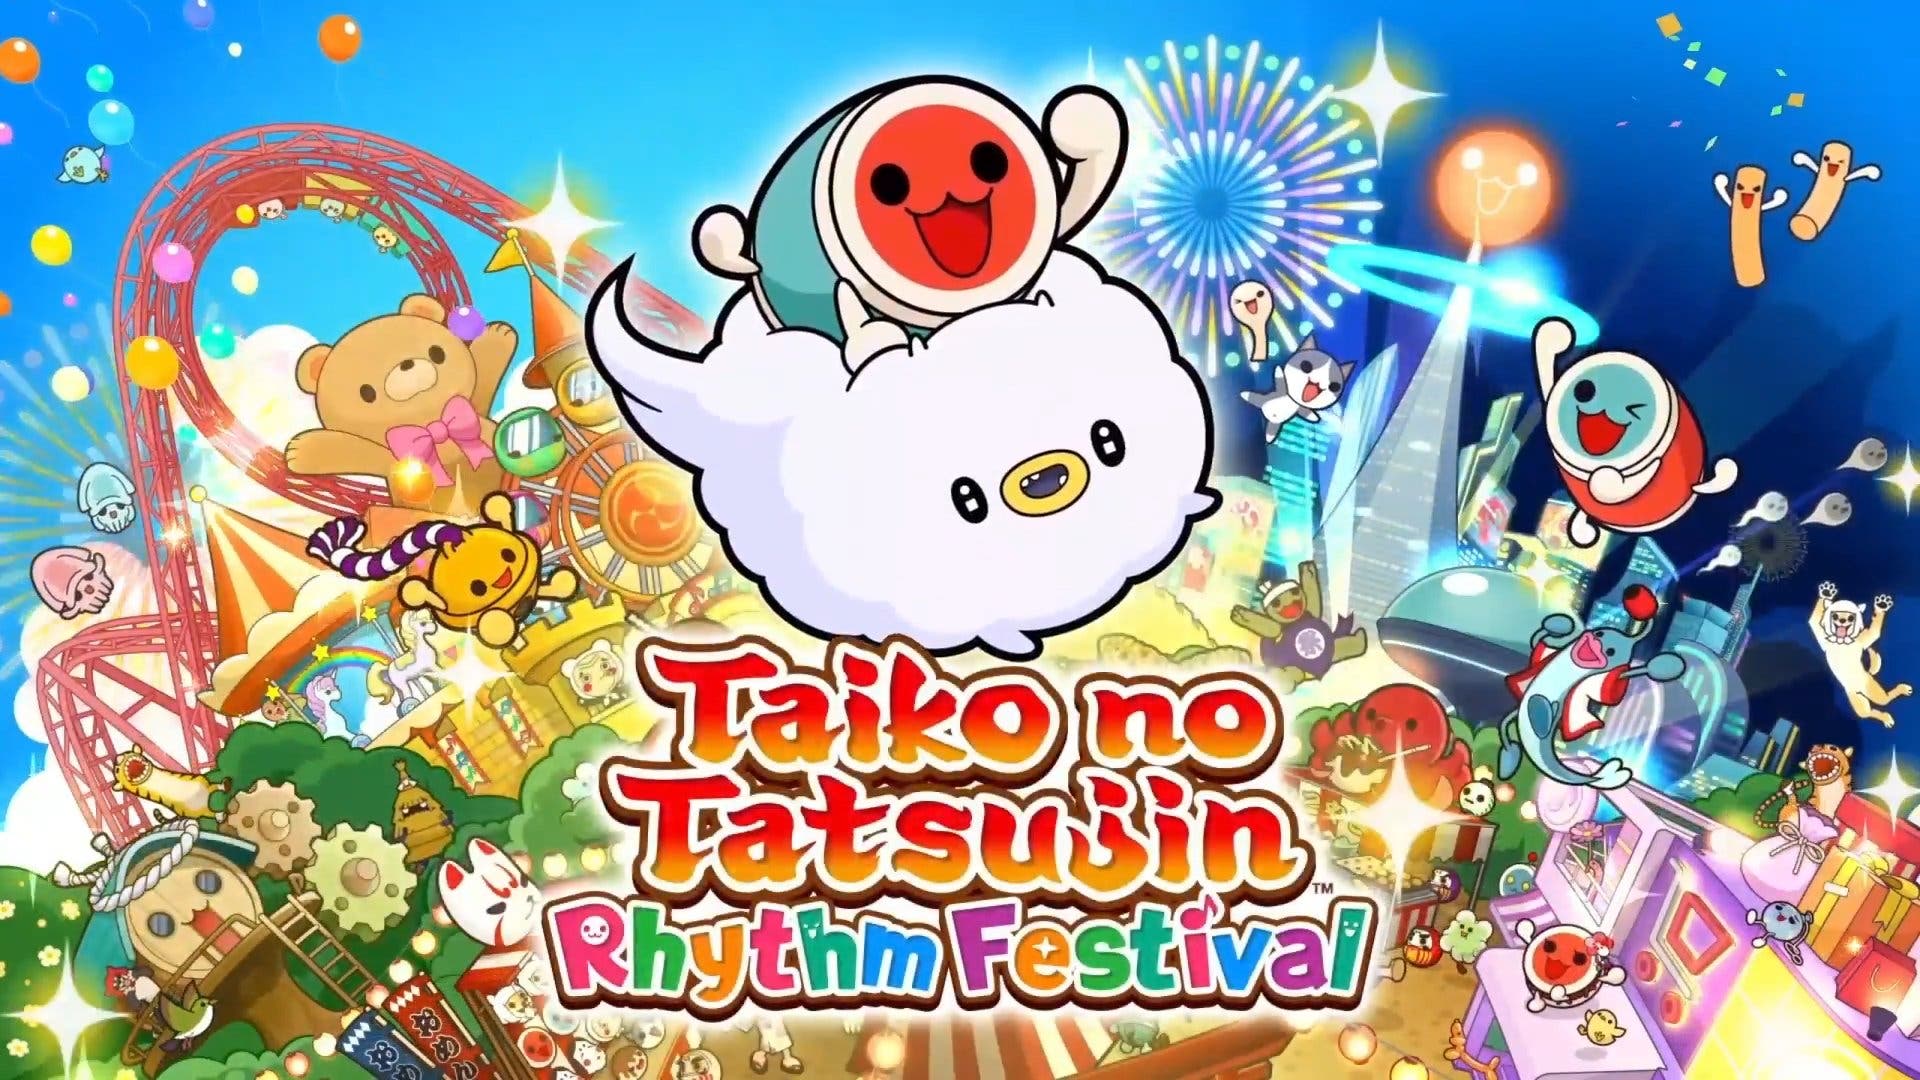 Taiko no Tatsujin: Rhythm Festival queda confirmado para el 23 de septiembre con este tráiler